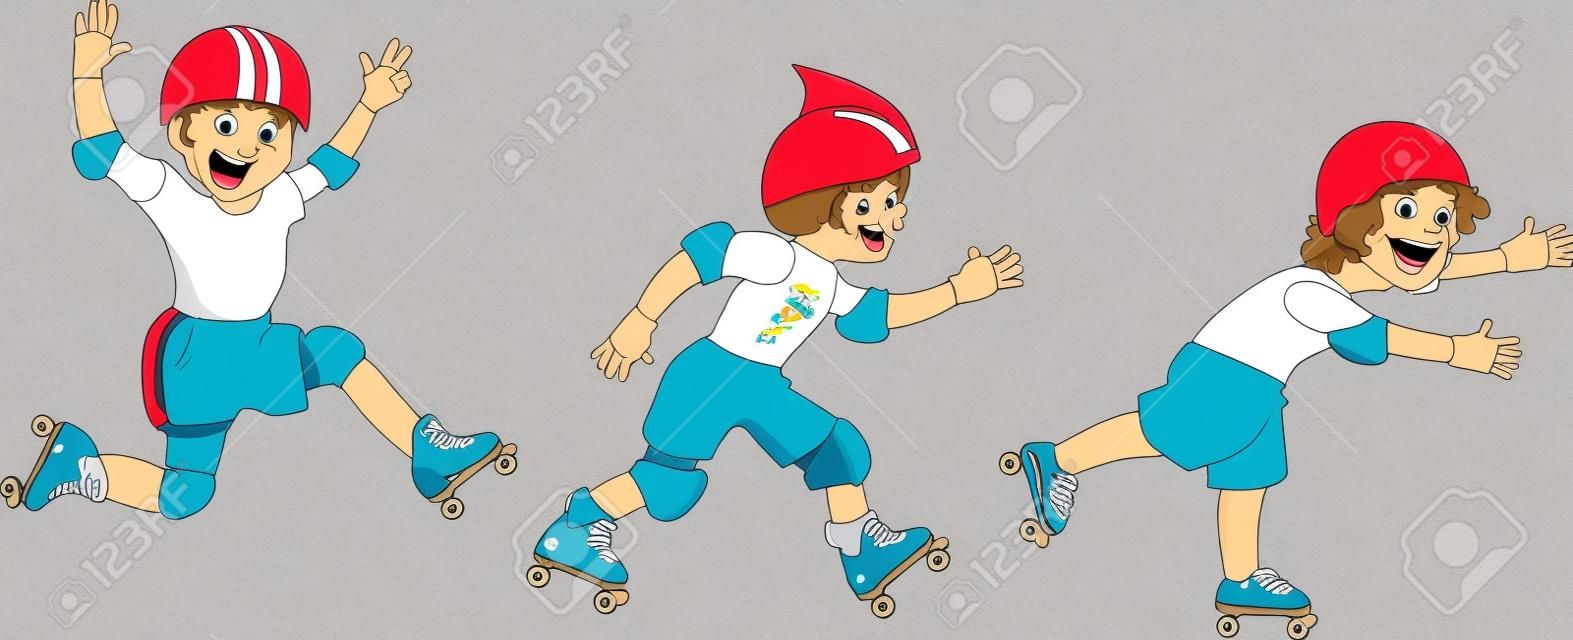 세 명의 작은 소년 만화 캐릭터 롤러 스케이트, 화이트 절연